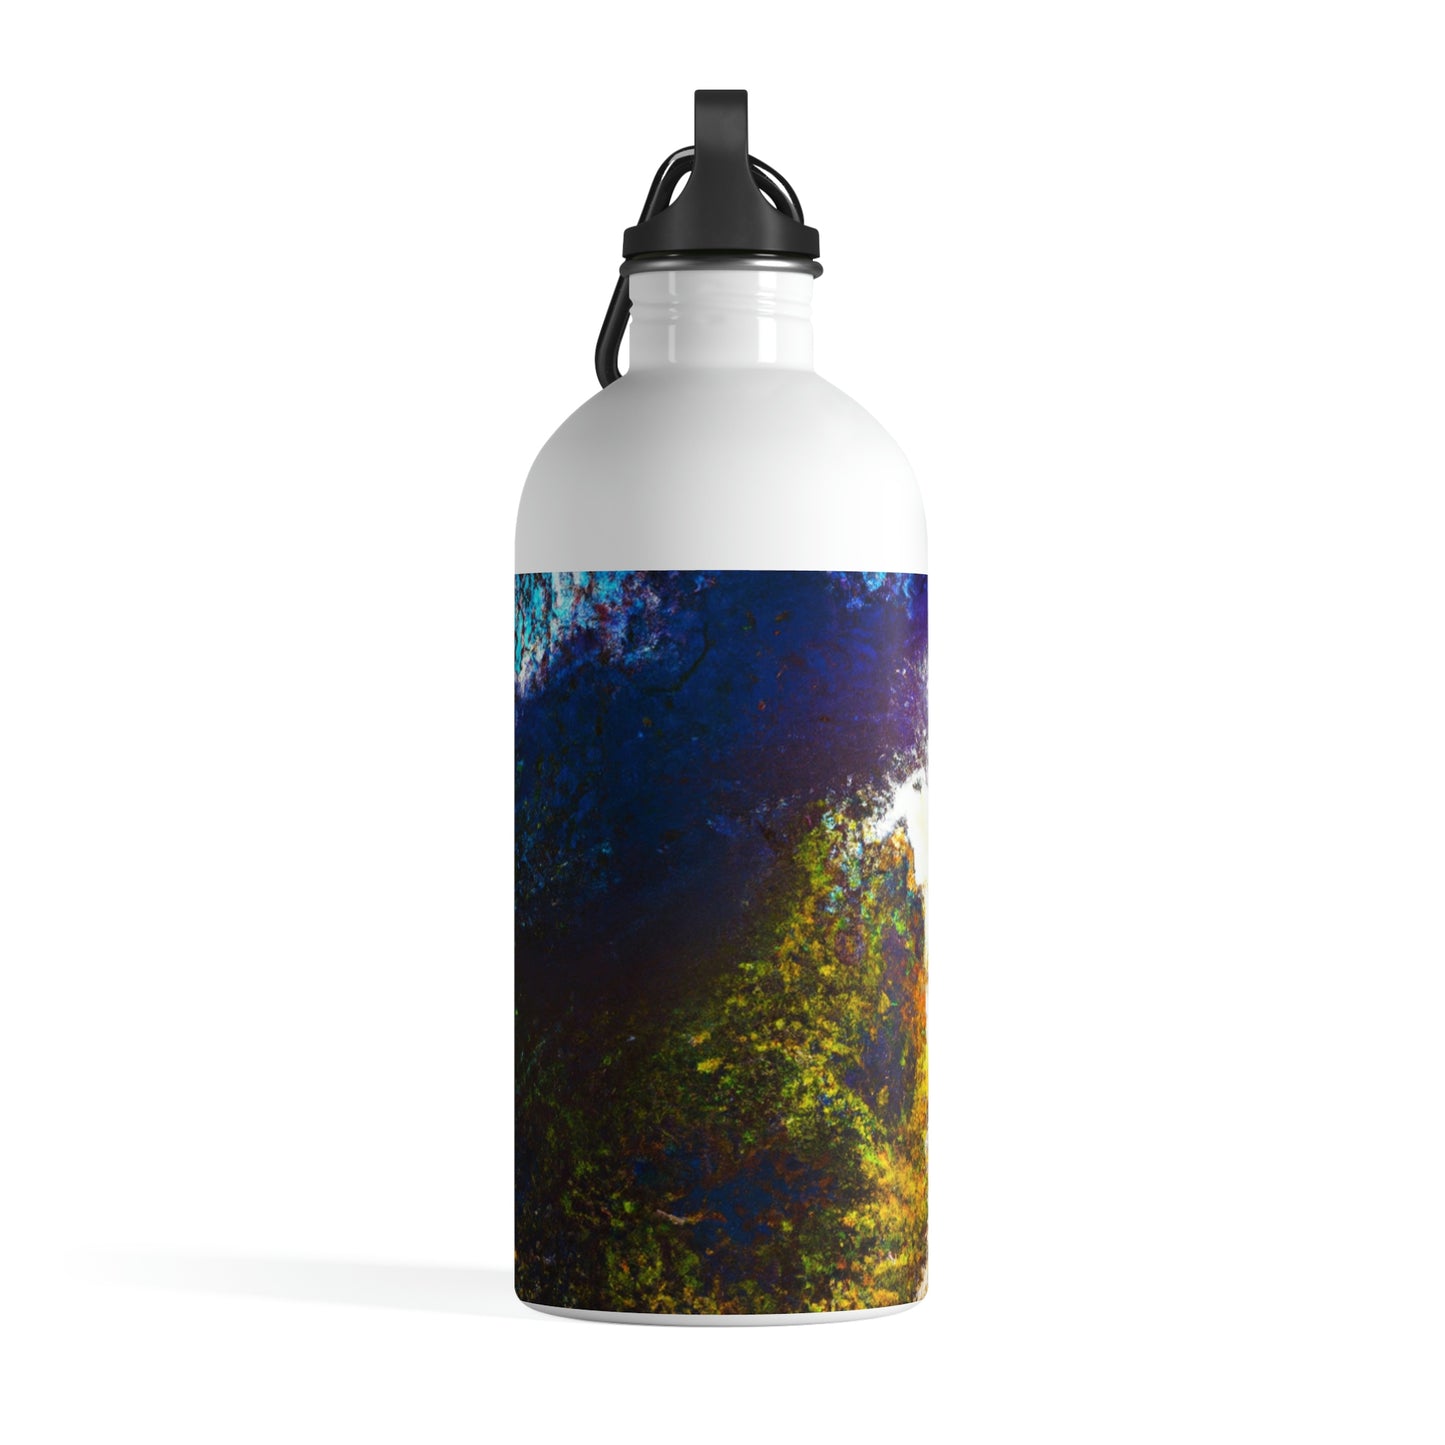 "Ein Lichtstrahl auf einem vergessenen Pfad" - Die Alien Edelstahl-Wasserflasche